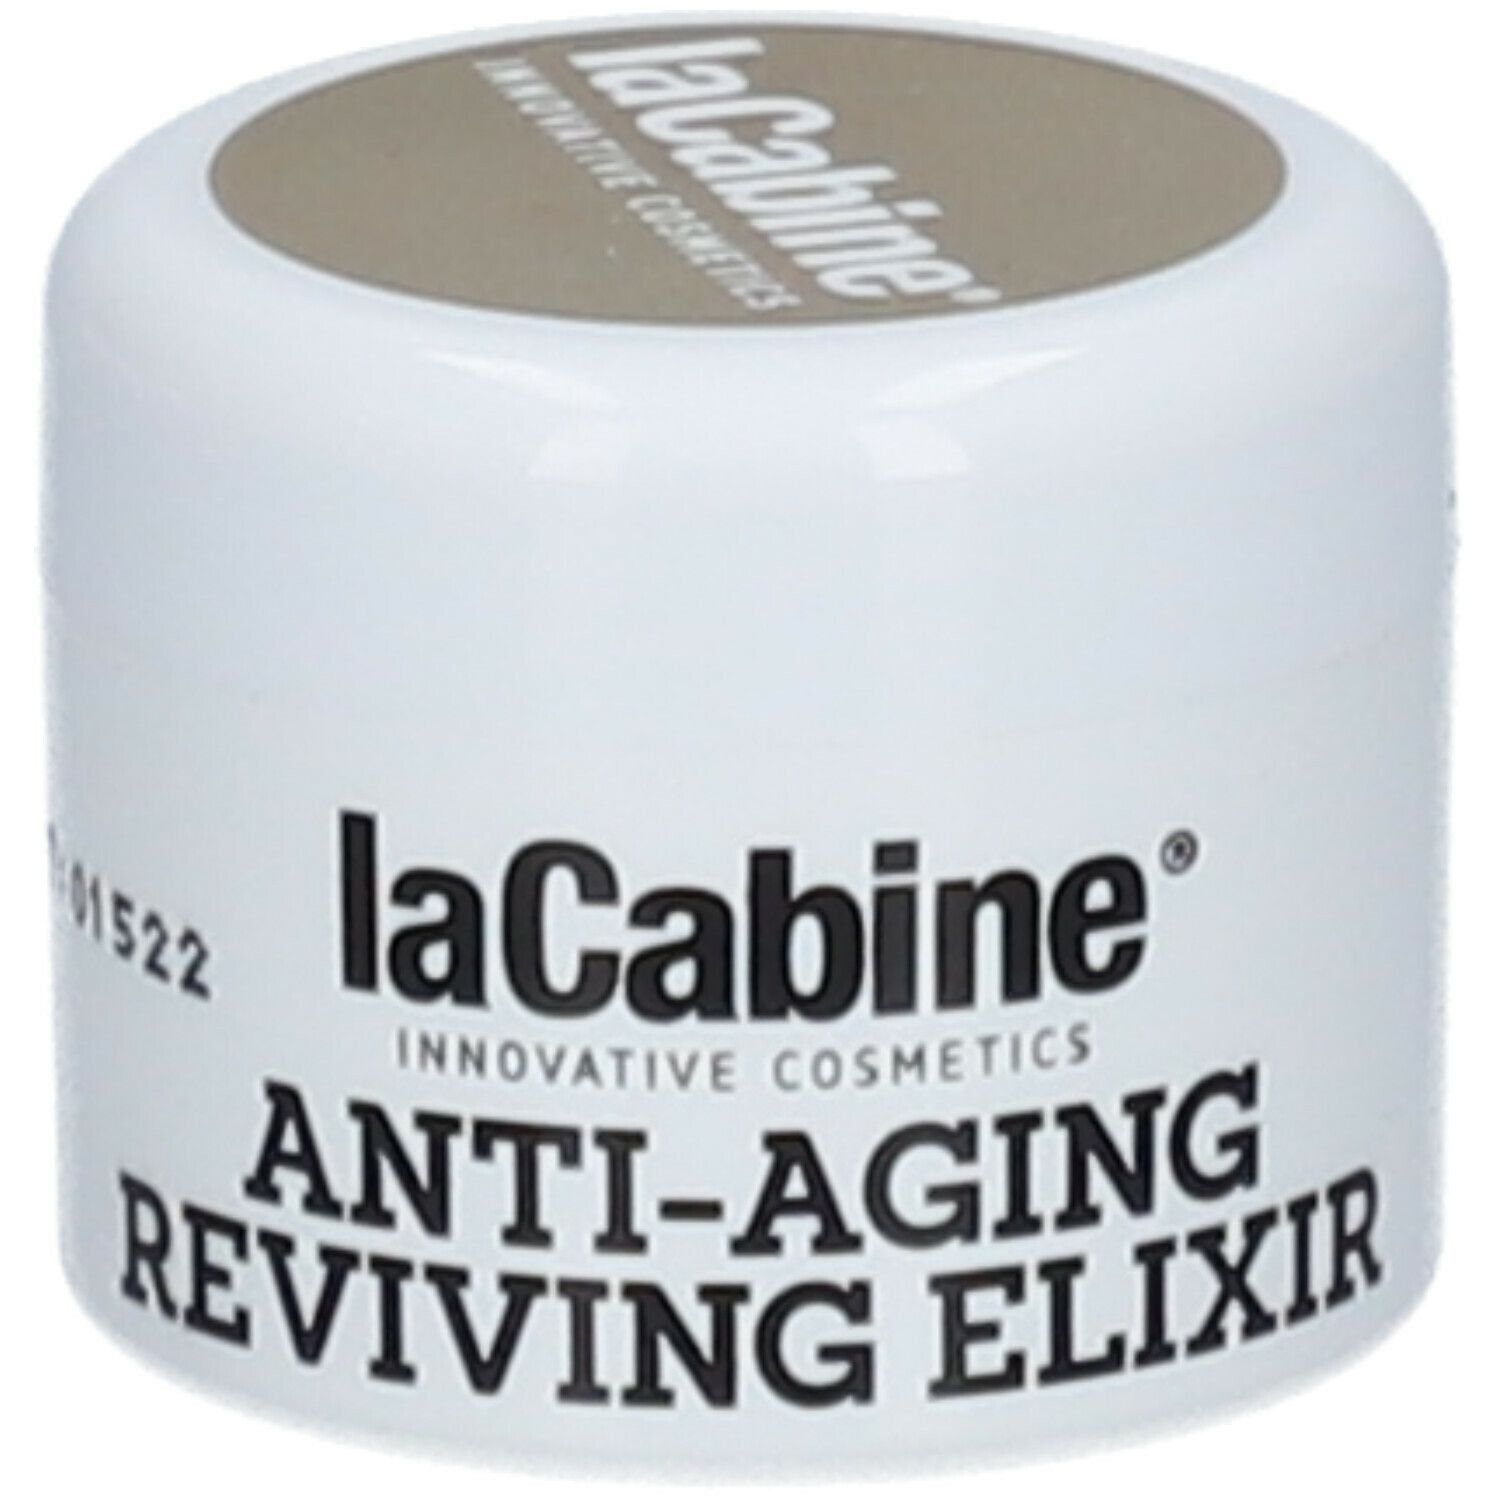 LaCabine® Anti-Aging Reviving Elixir Crème